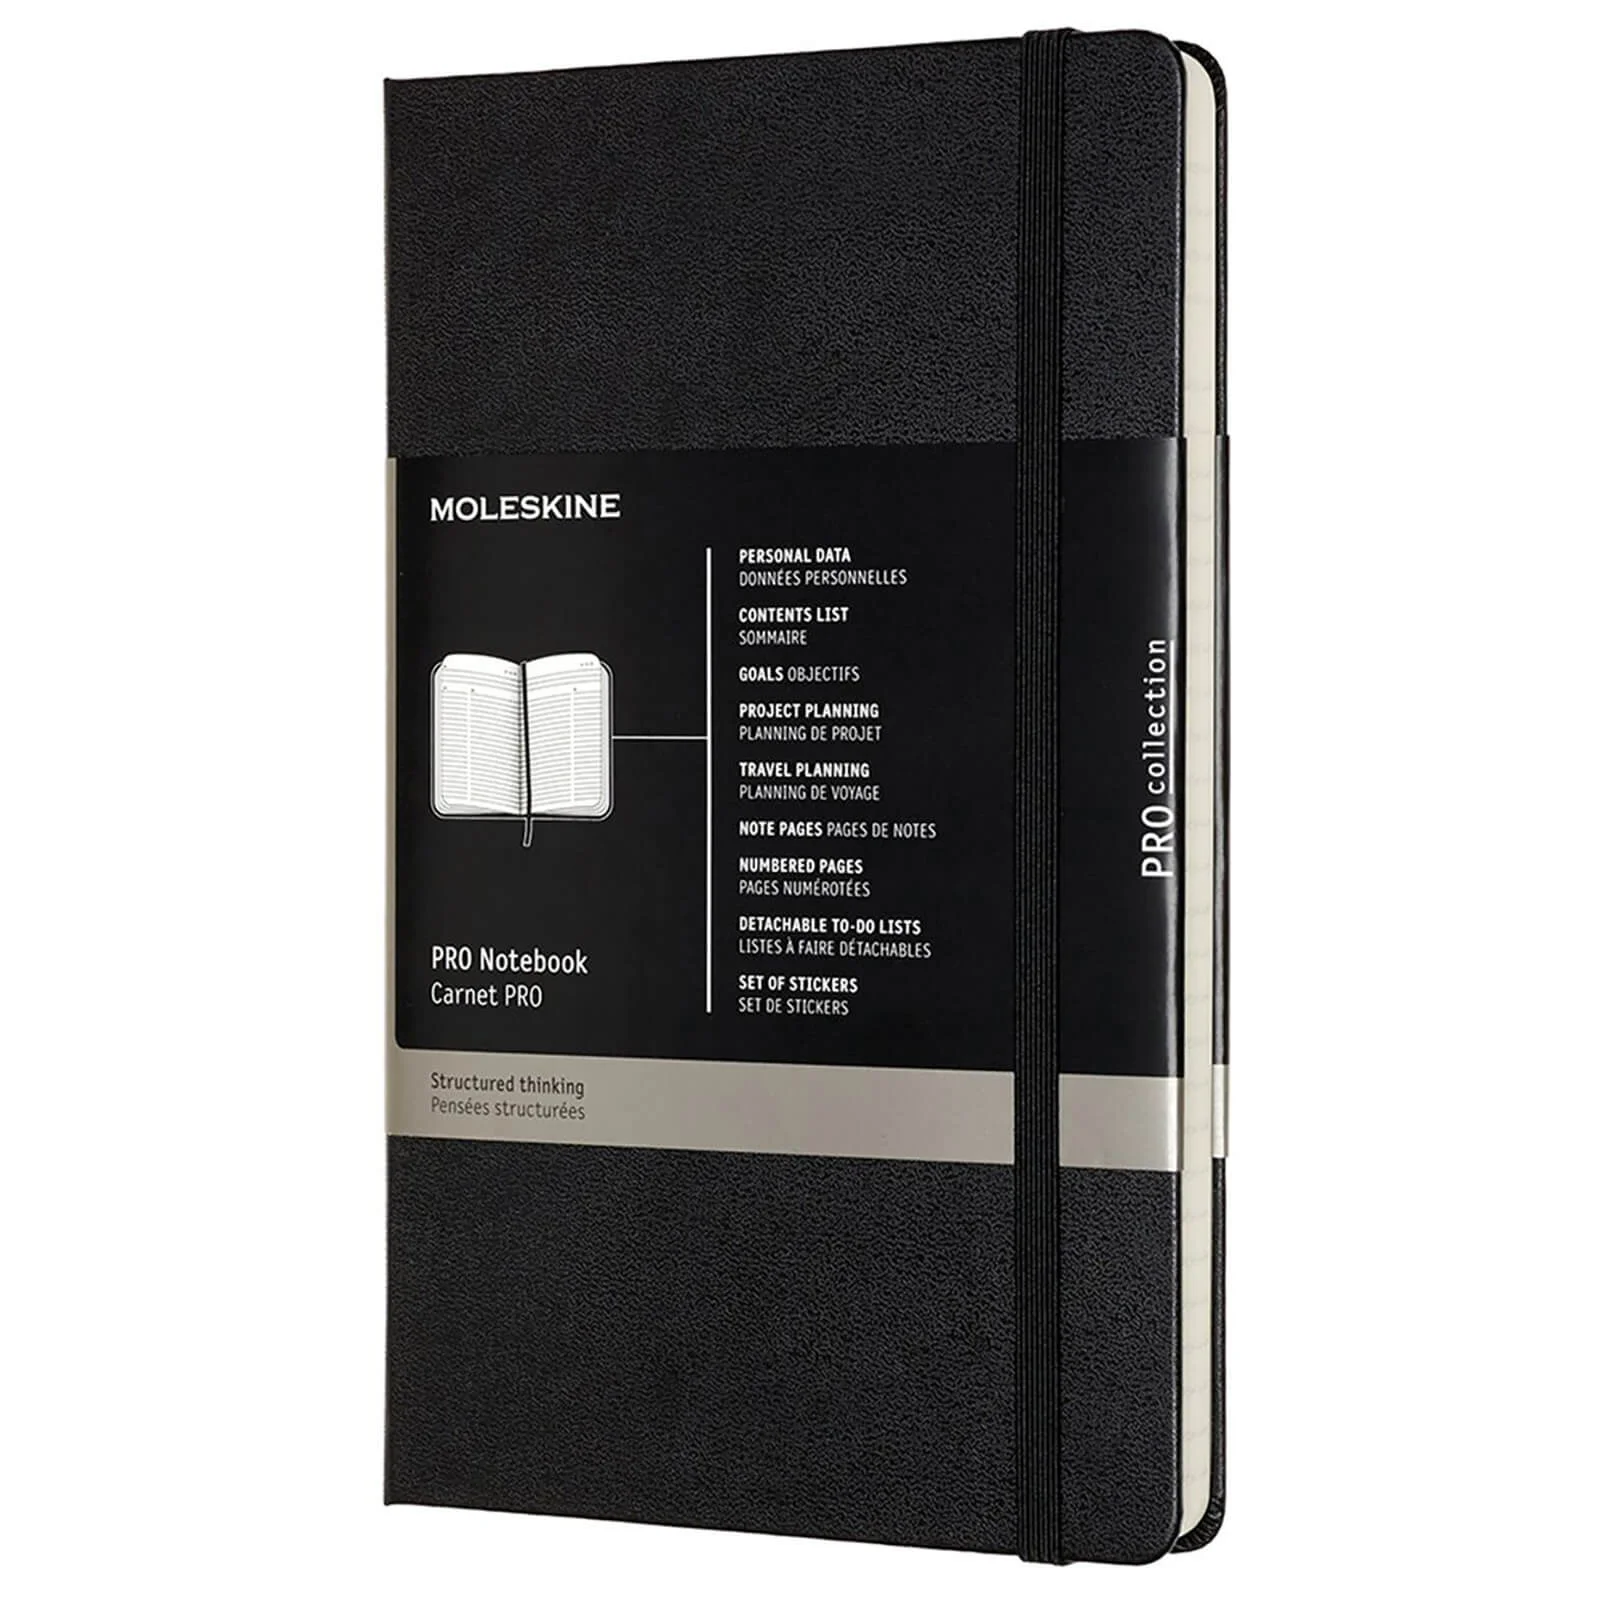 Moleskine Pro Hardcover Large Notebook - Black Image 1